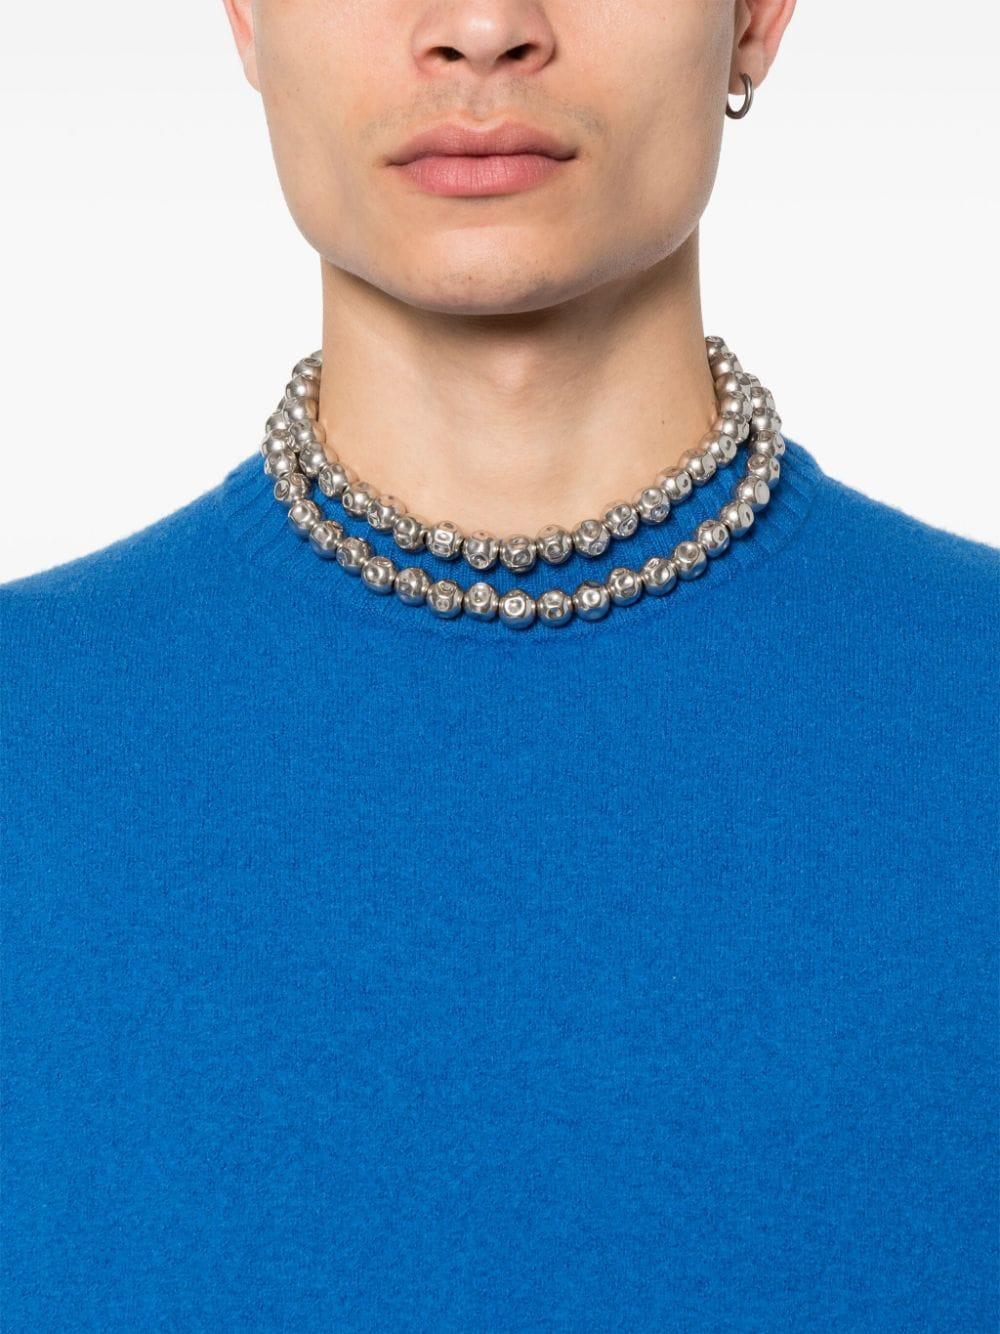 Jil Sander hammered beaded necklace - Silver